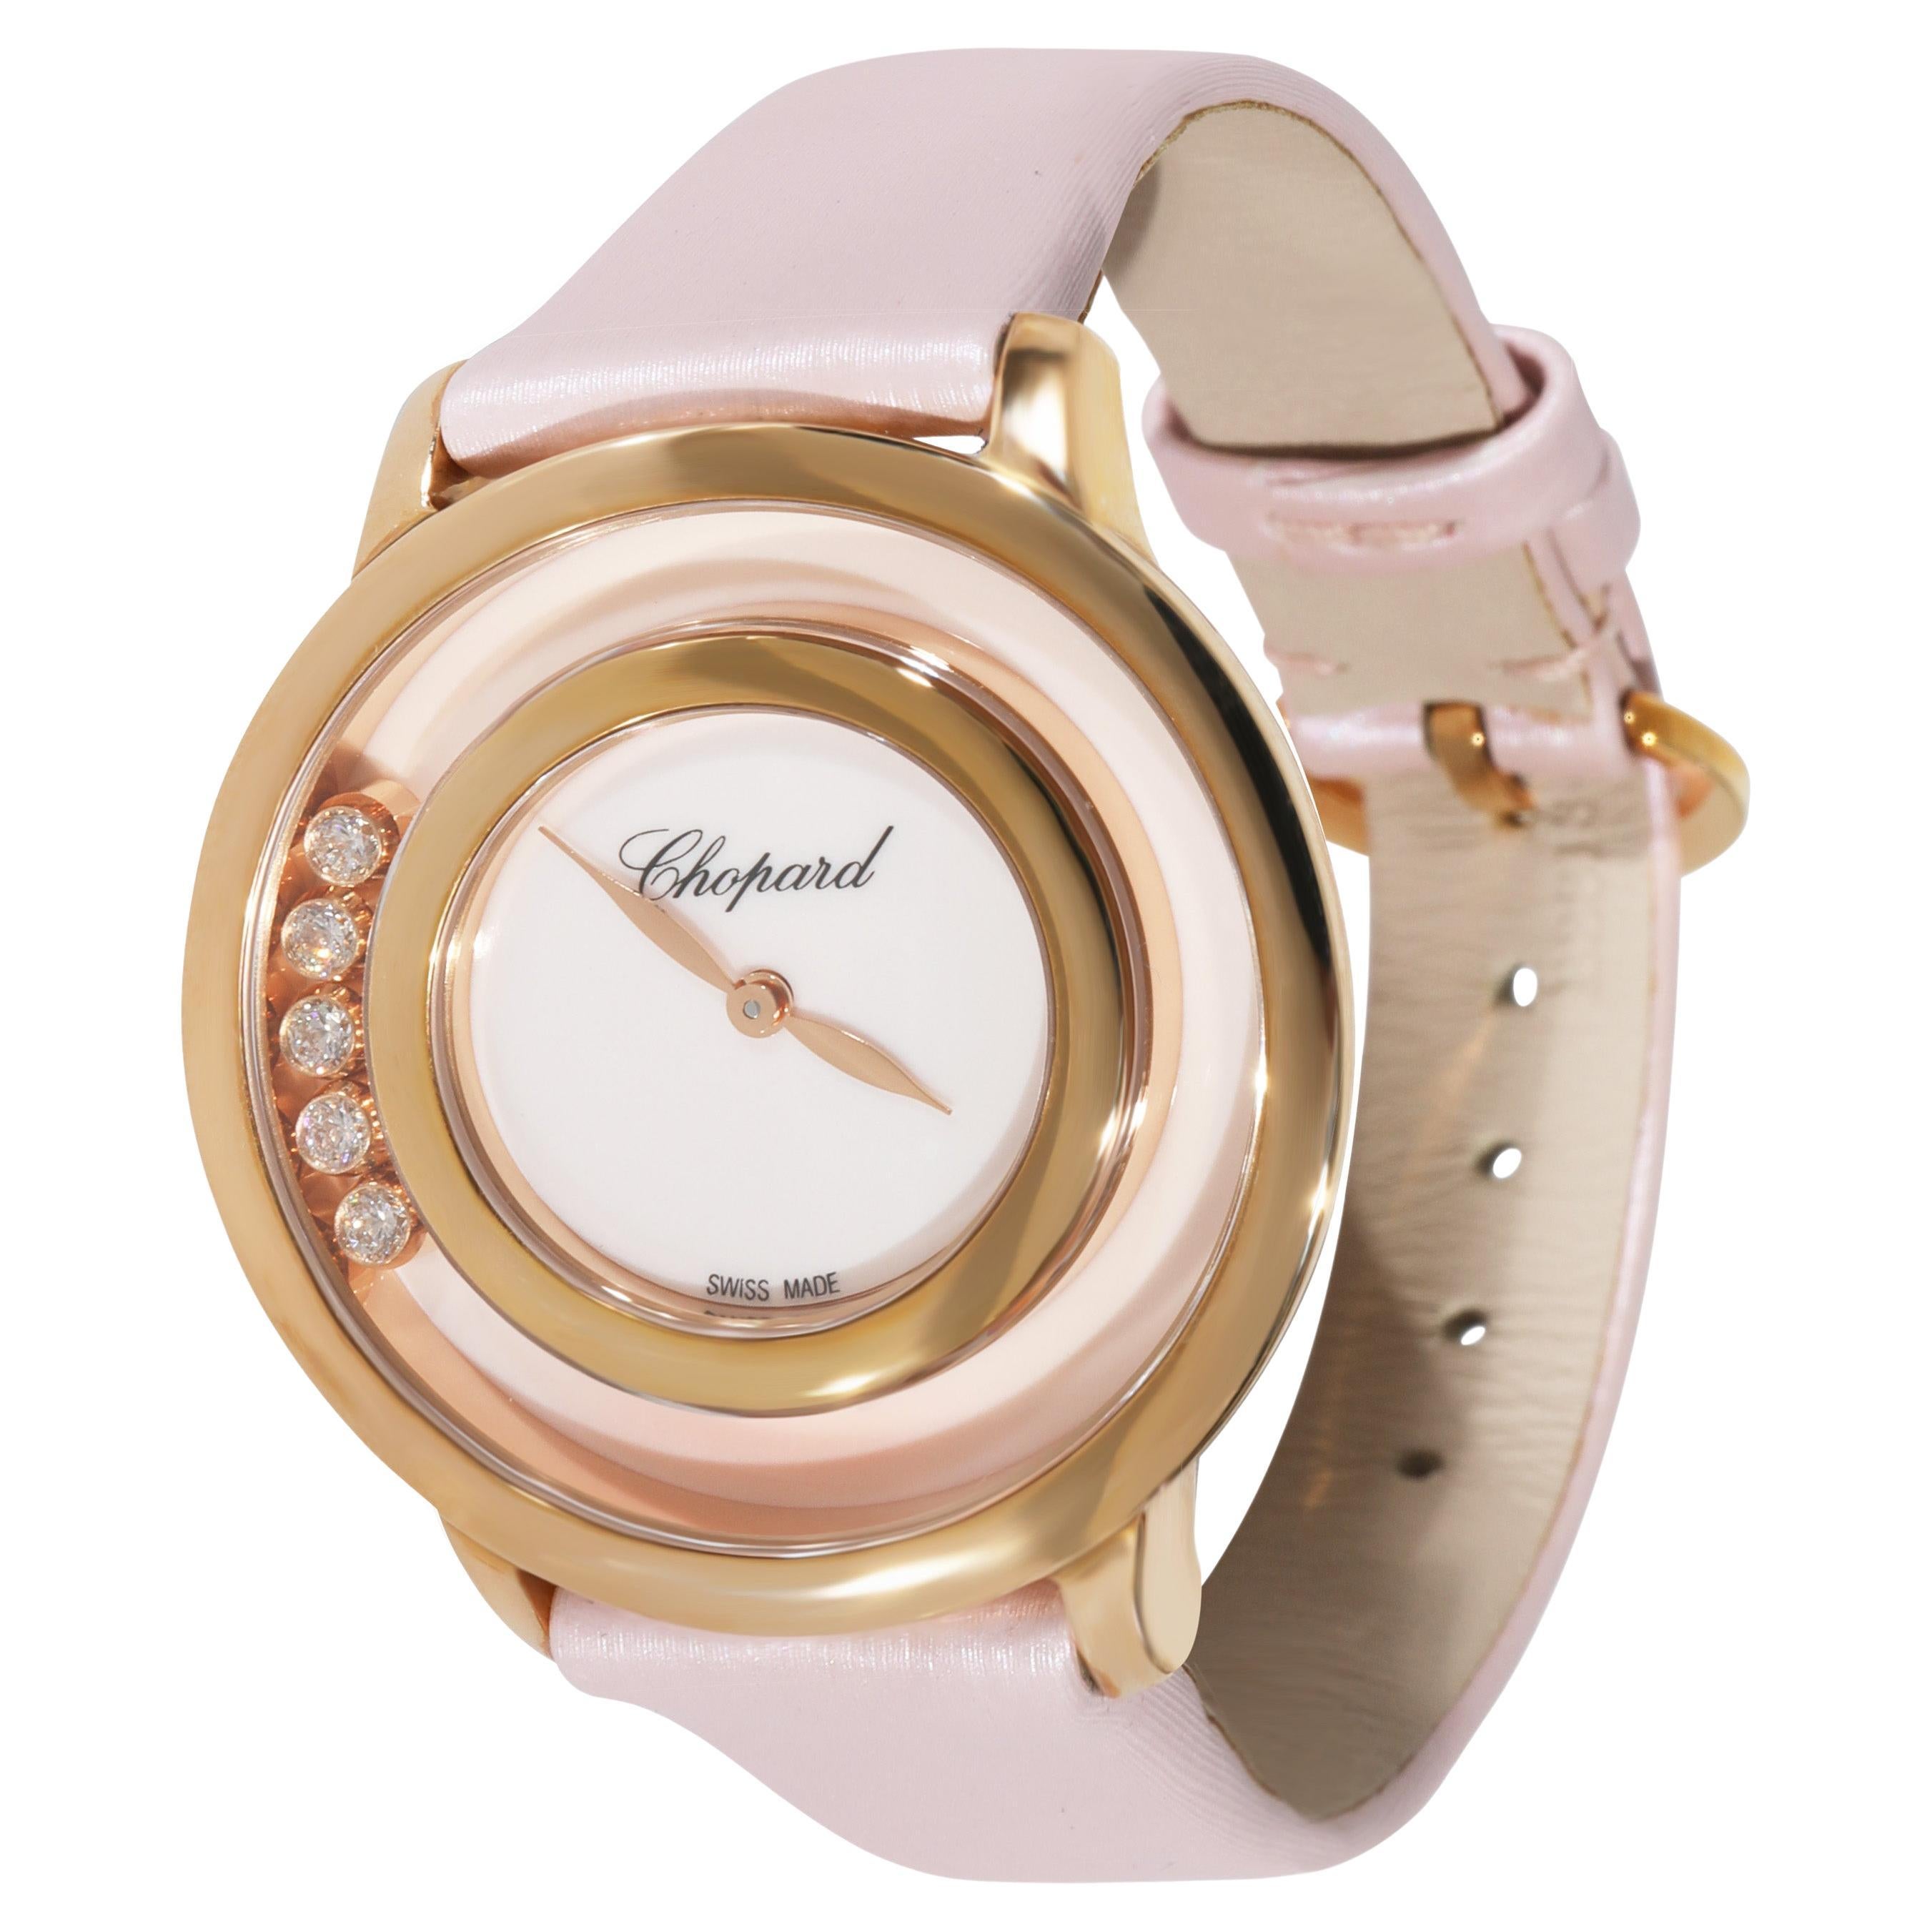 Chopard Happy Diamonds 209429-5106 Women's Watch in 18 Karat Rose Gold